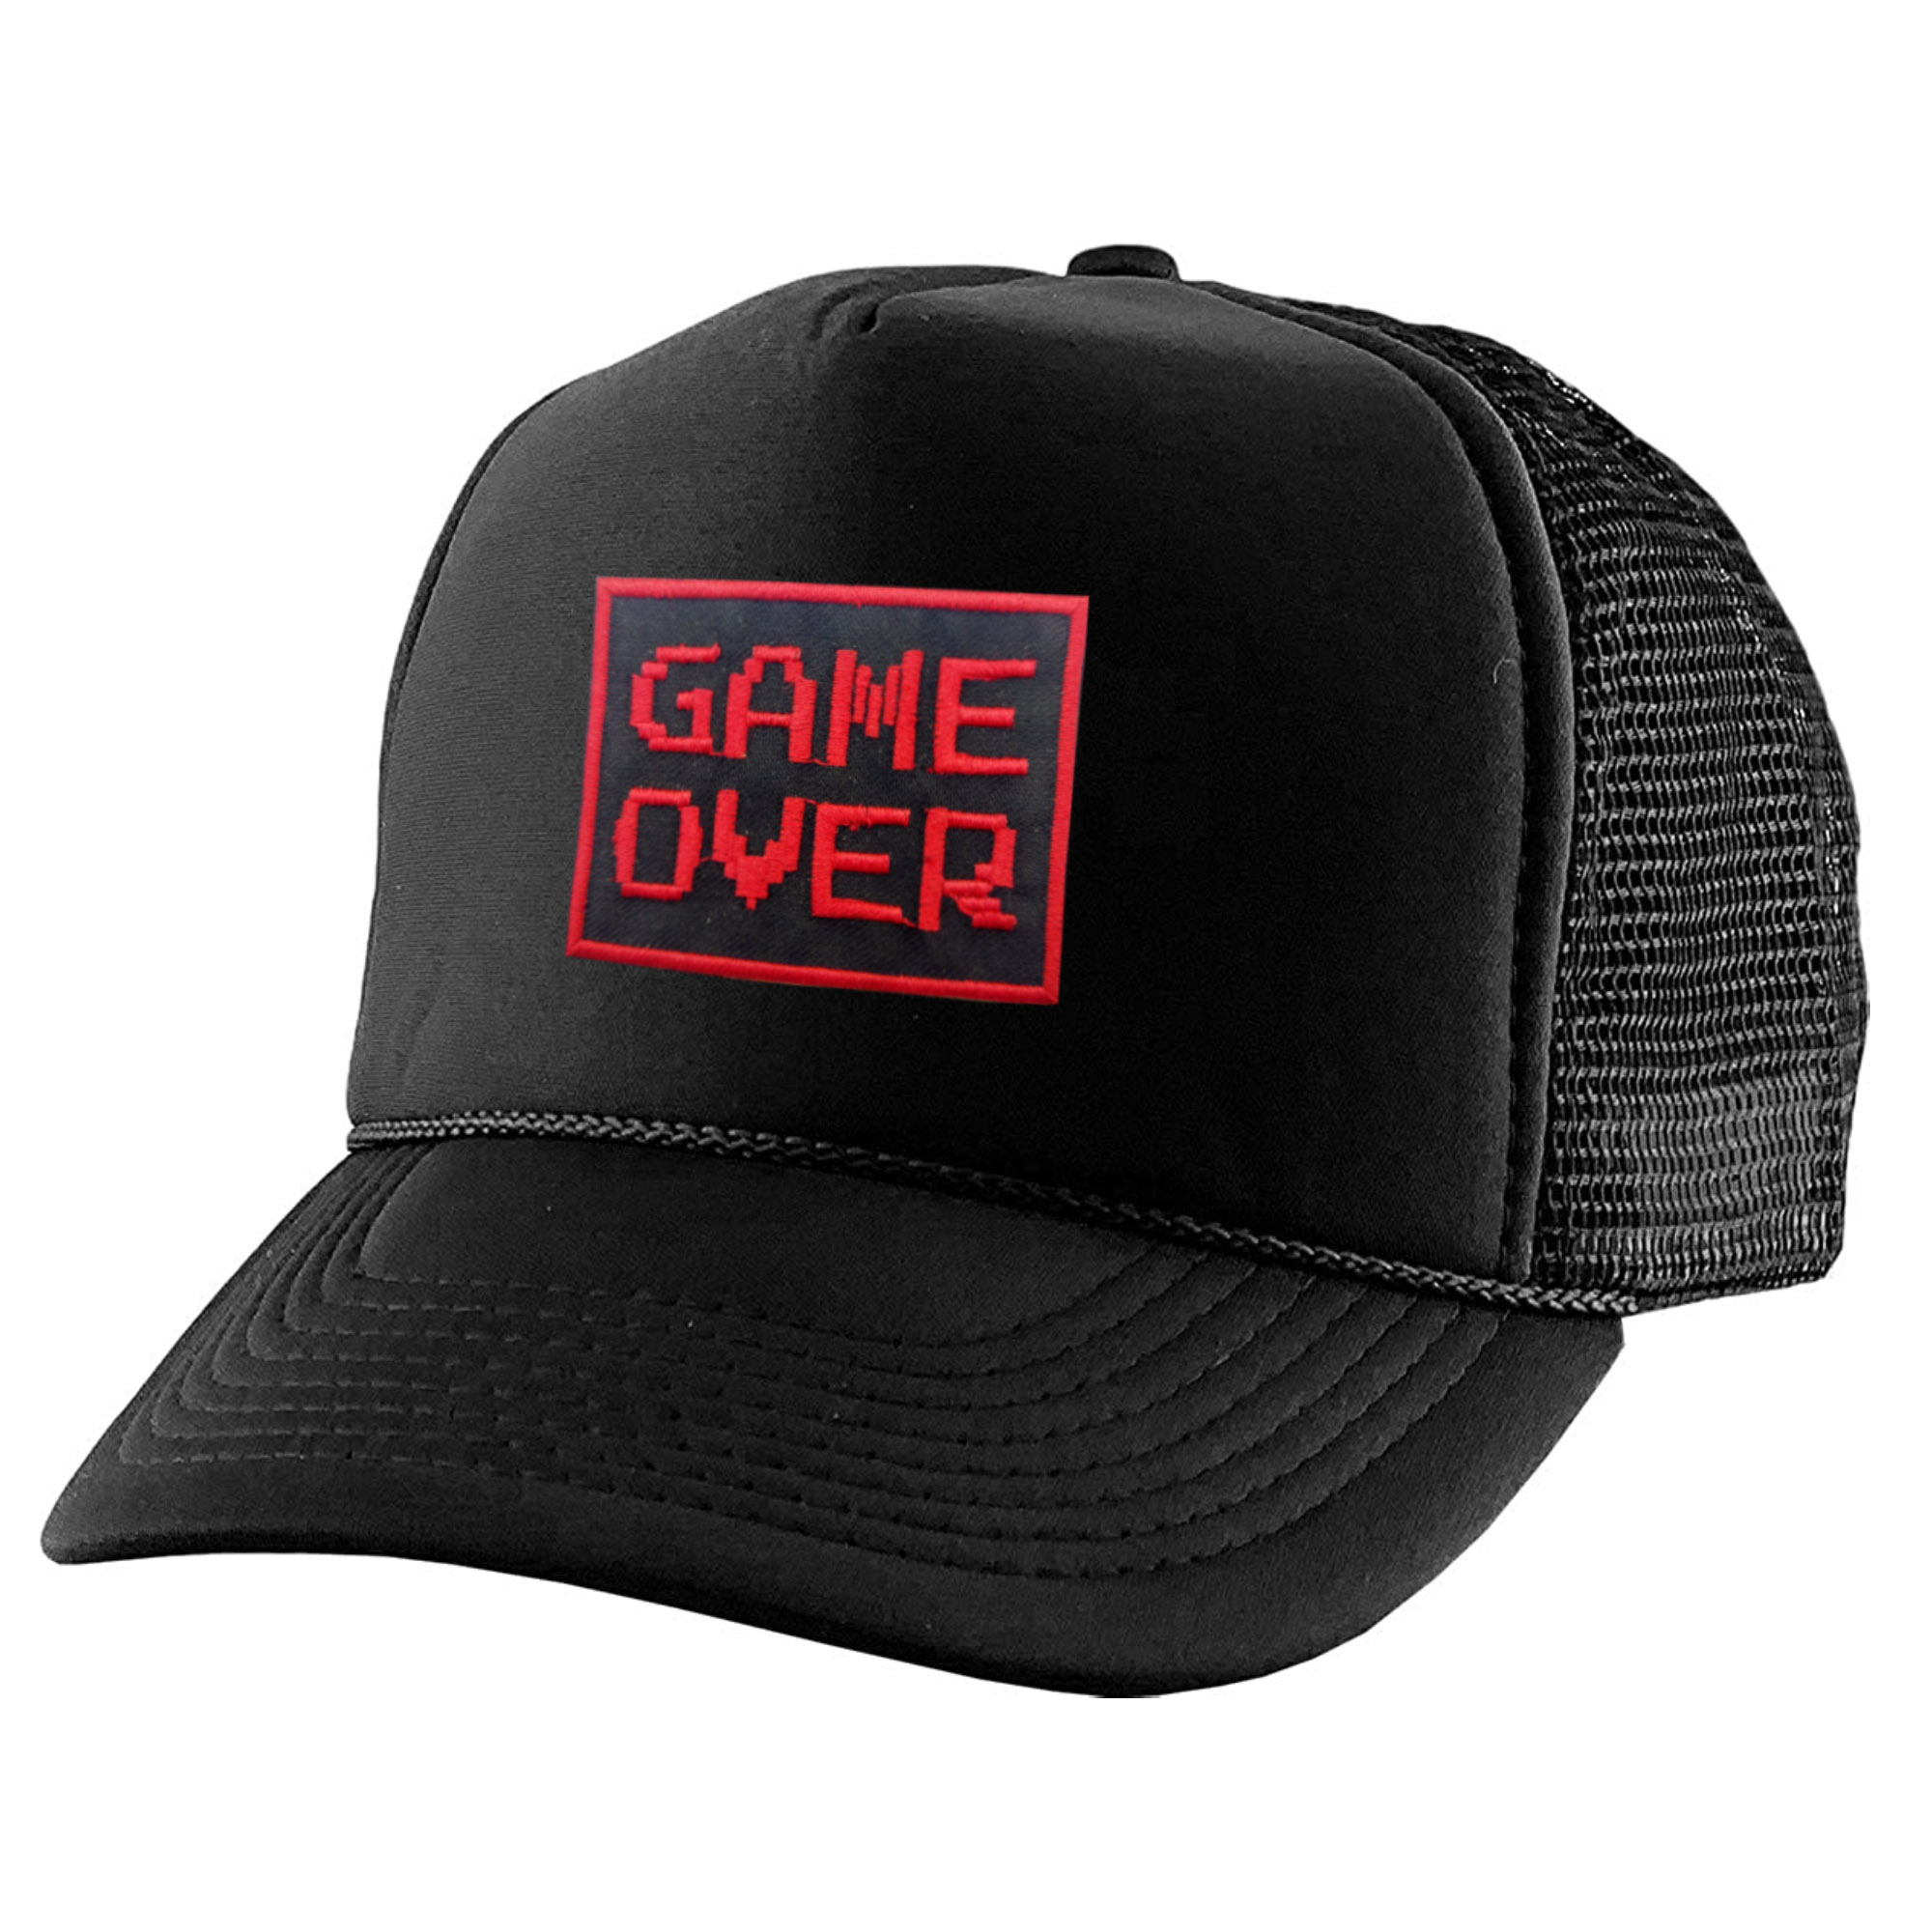 نکته خرید - قیمت روز کلاه کپ مدل Game Over کد kpp-039 خرید